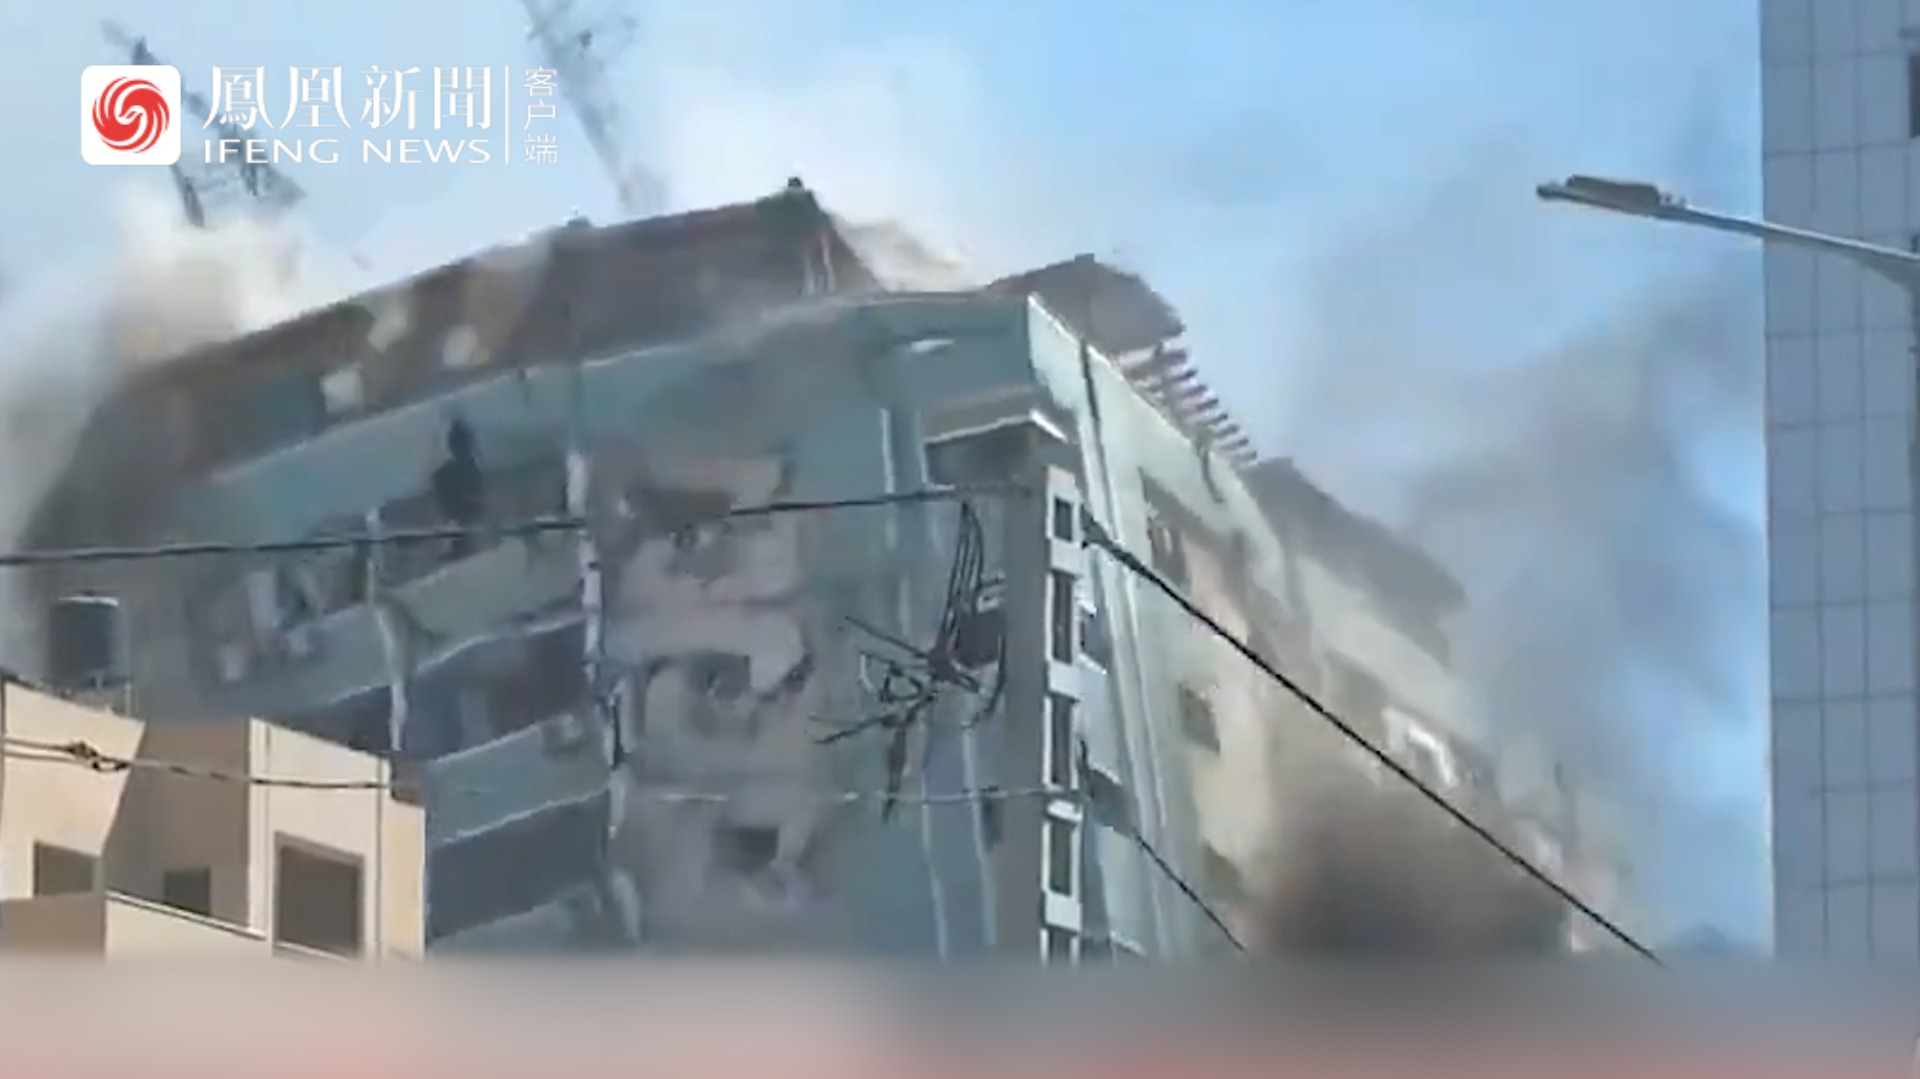 多家外媒所在大楼被炸前，负责人曾央求以色列多给10分钟，但遭以方拒绝